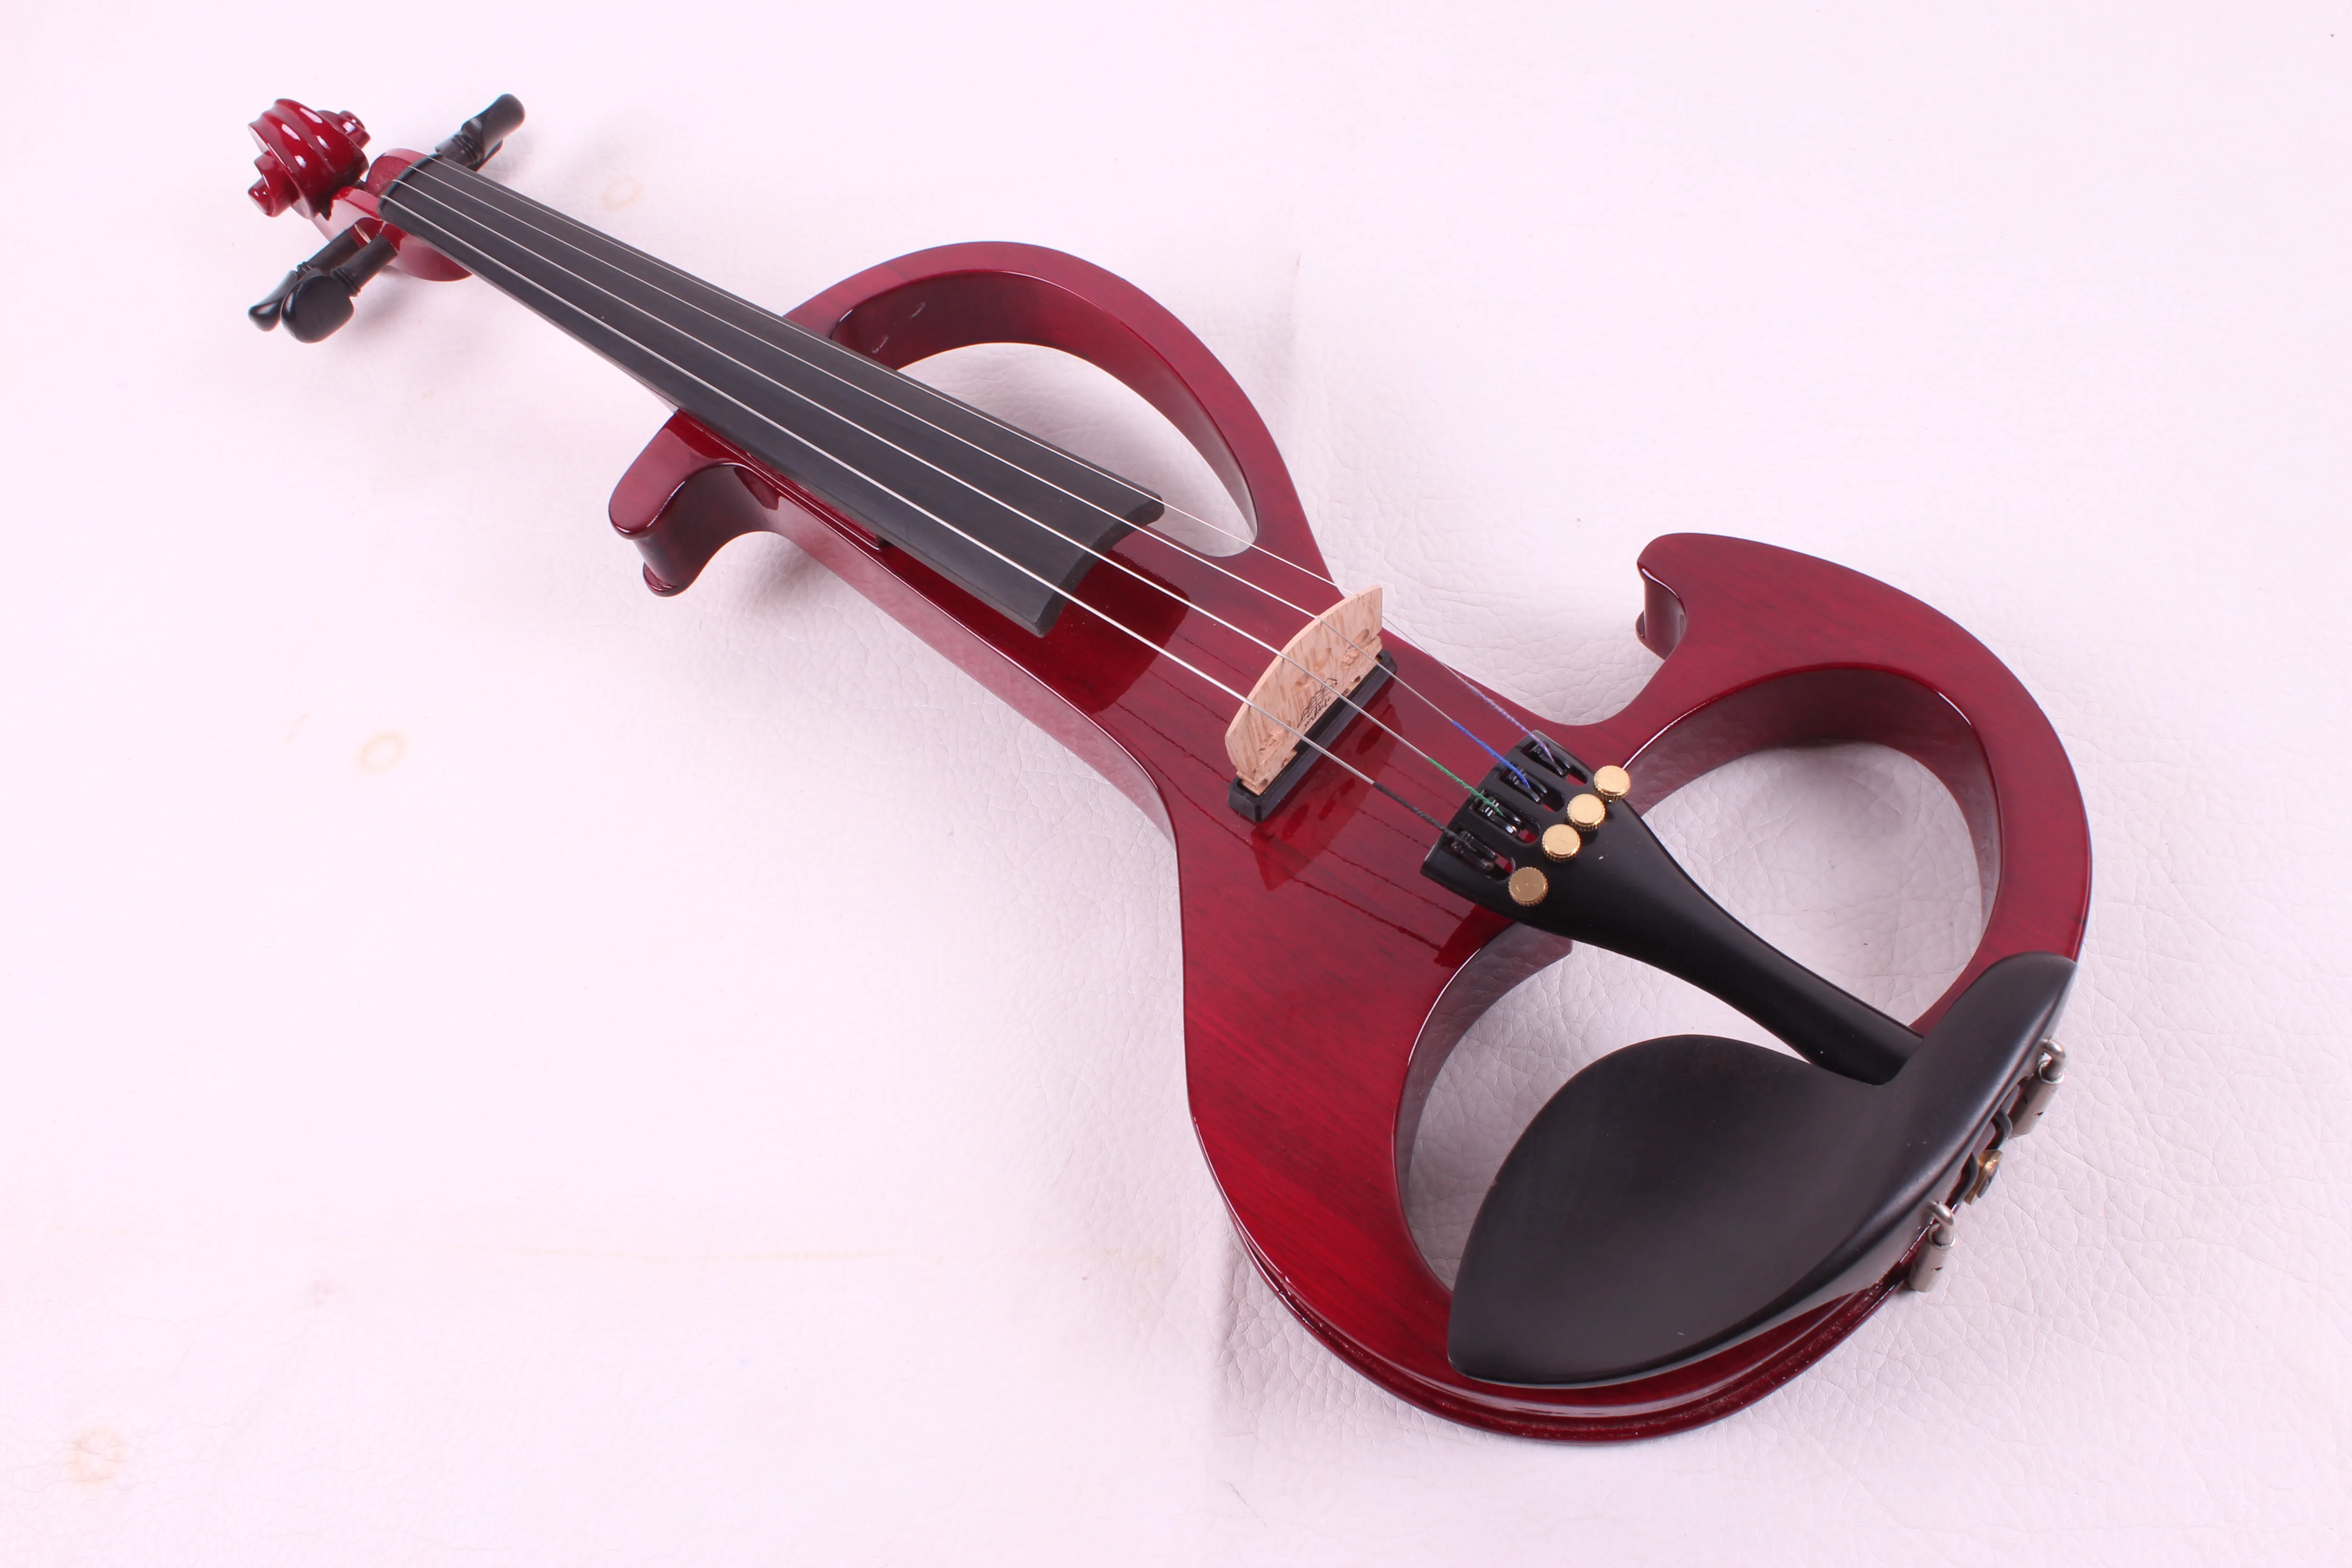 Yinfente 4 string RED Electric Тихая скрипка 4/4 натуральное дерево Бесплатный чехол + лук # EV5